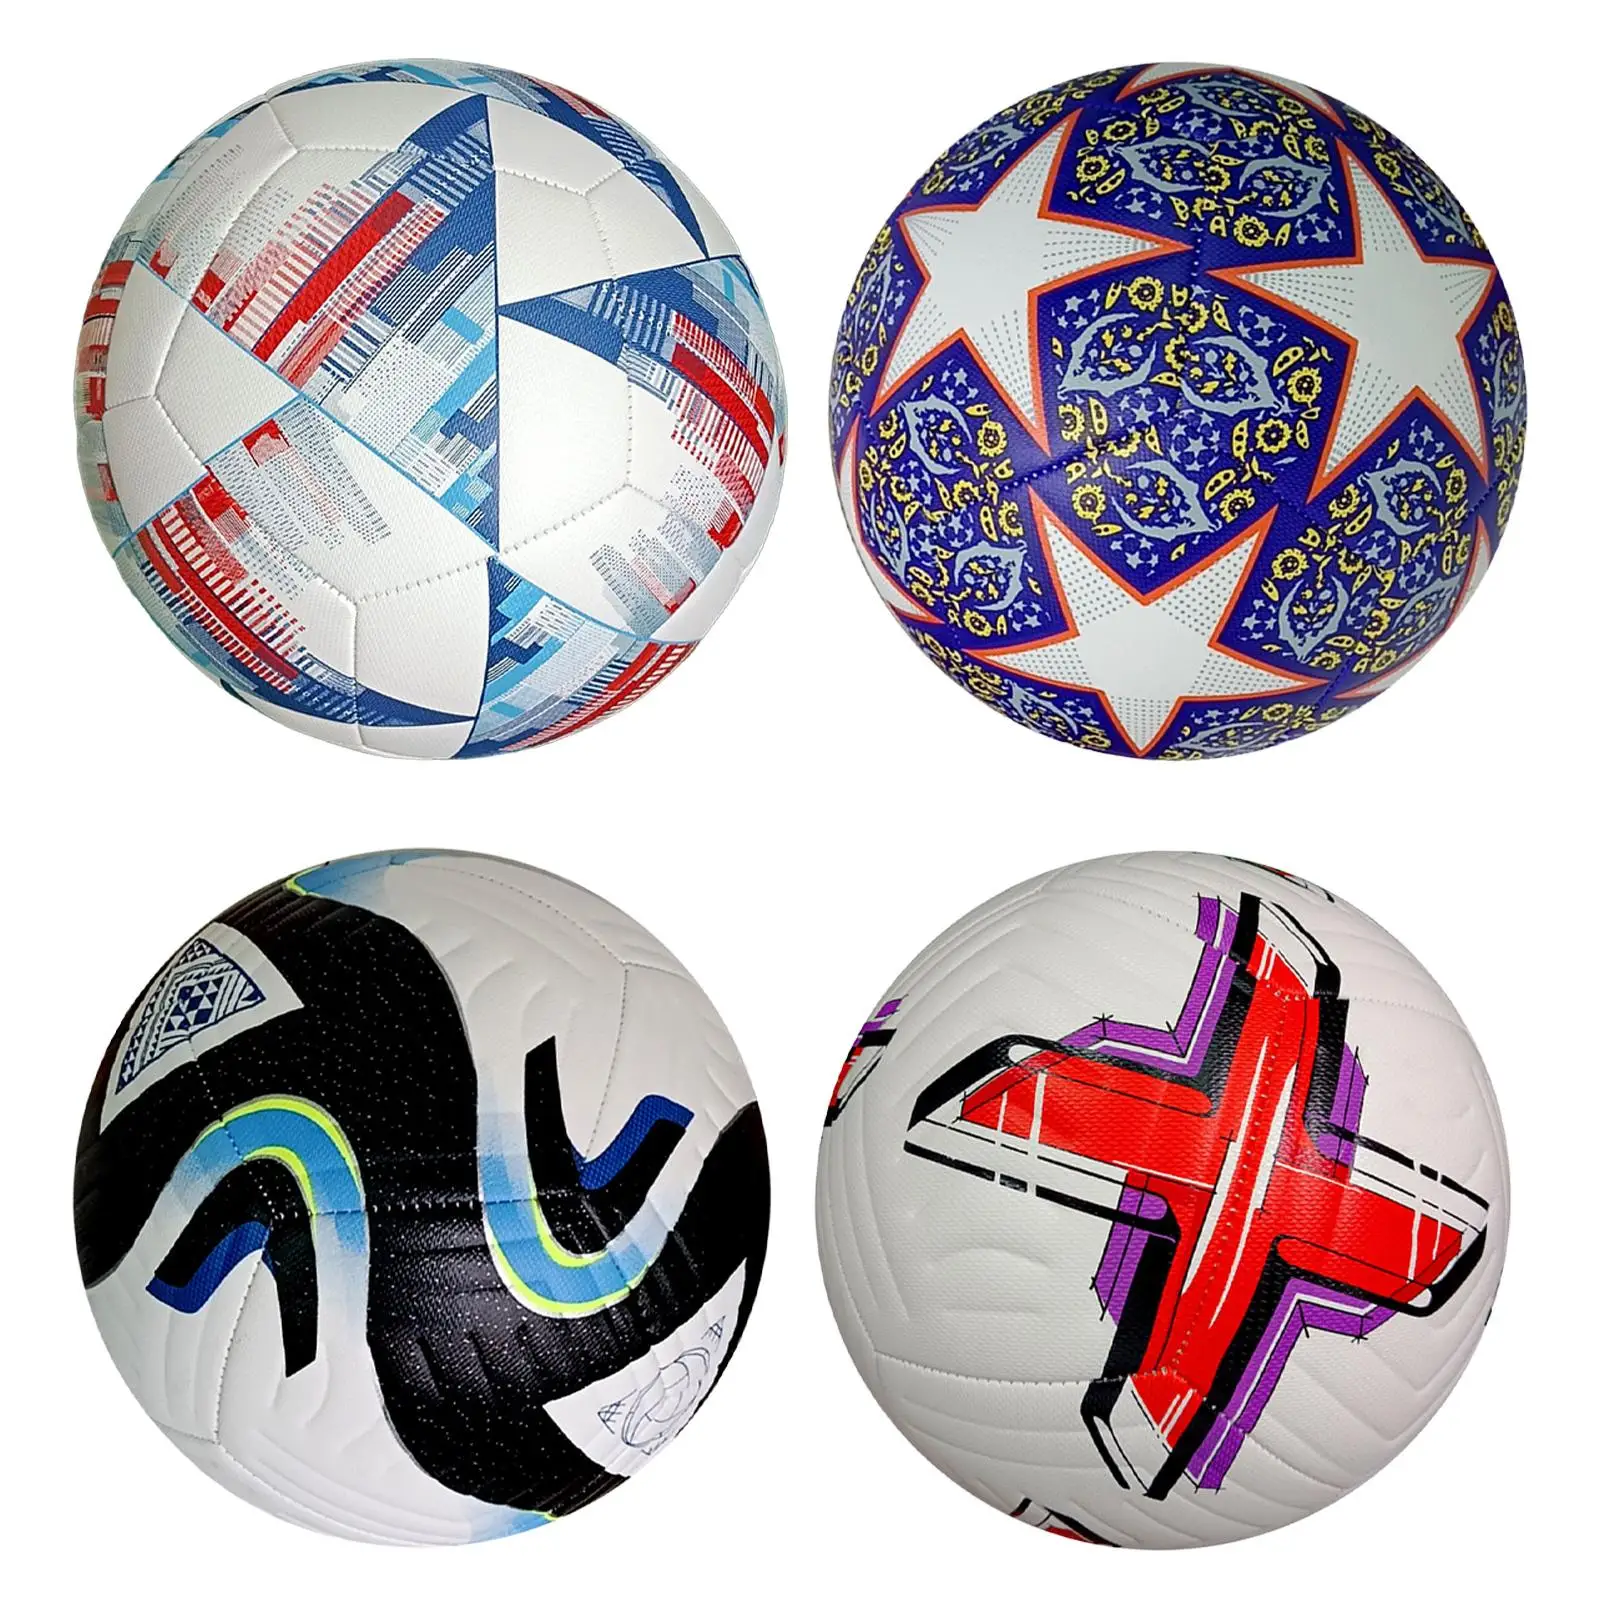 Soccer Ball Size 5 Soccer Training Equipment Football Training Ball for